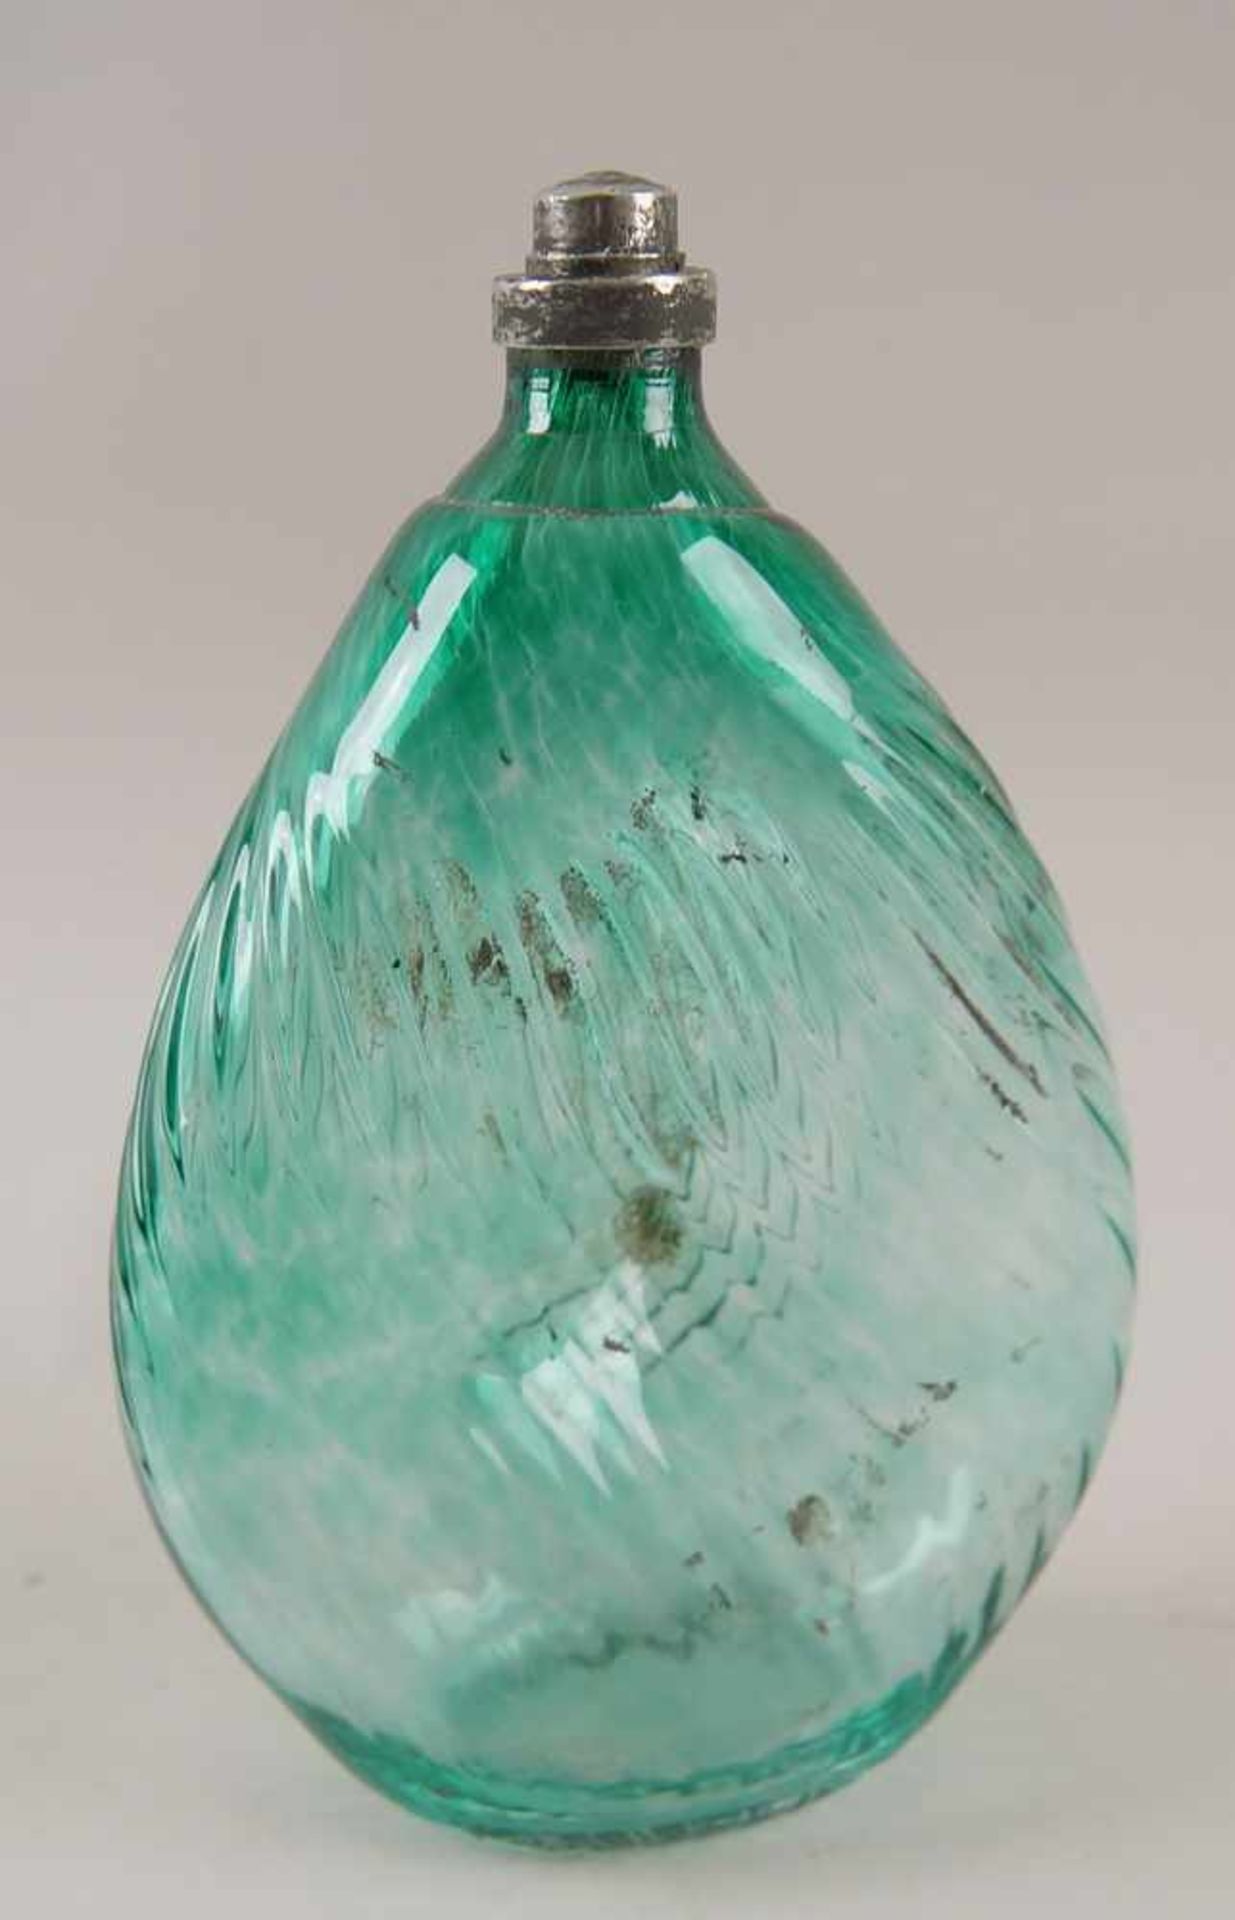 Gramsacher Nabelflasche, Tirol, ~ 1900, hellgrünes Glas, H 23,5cm - Bild 5 aus 6